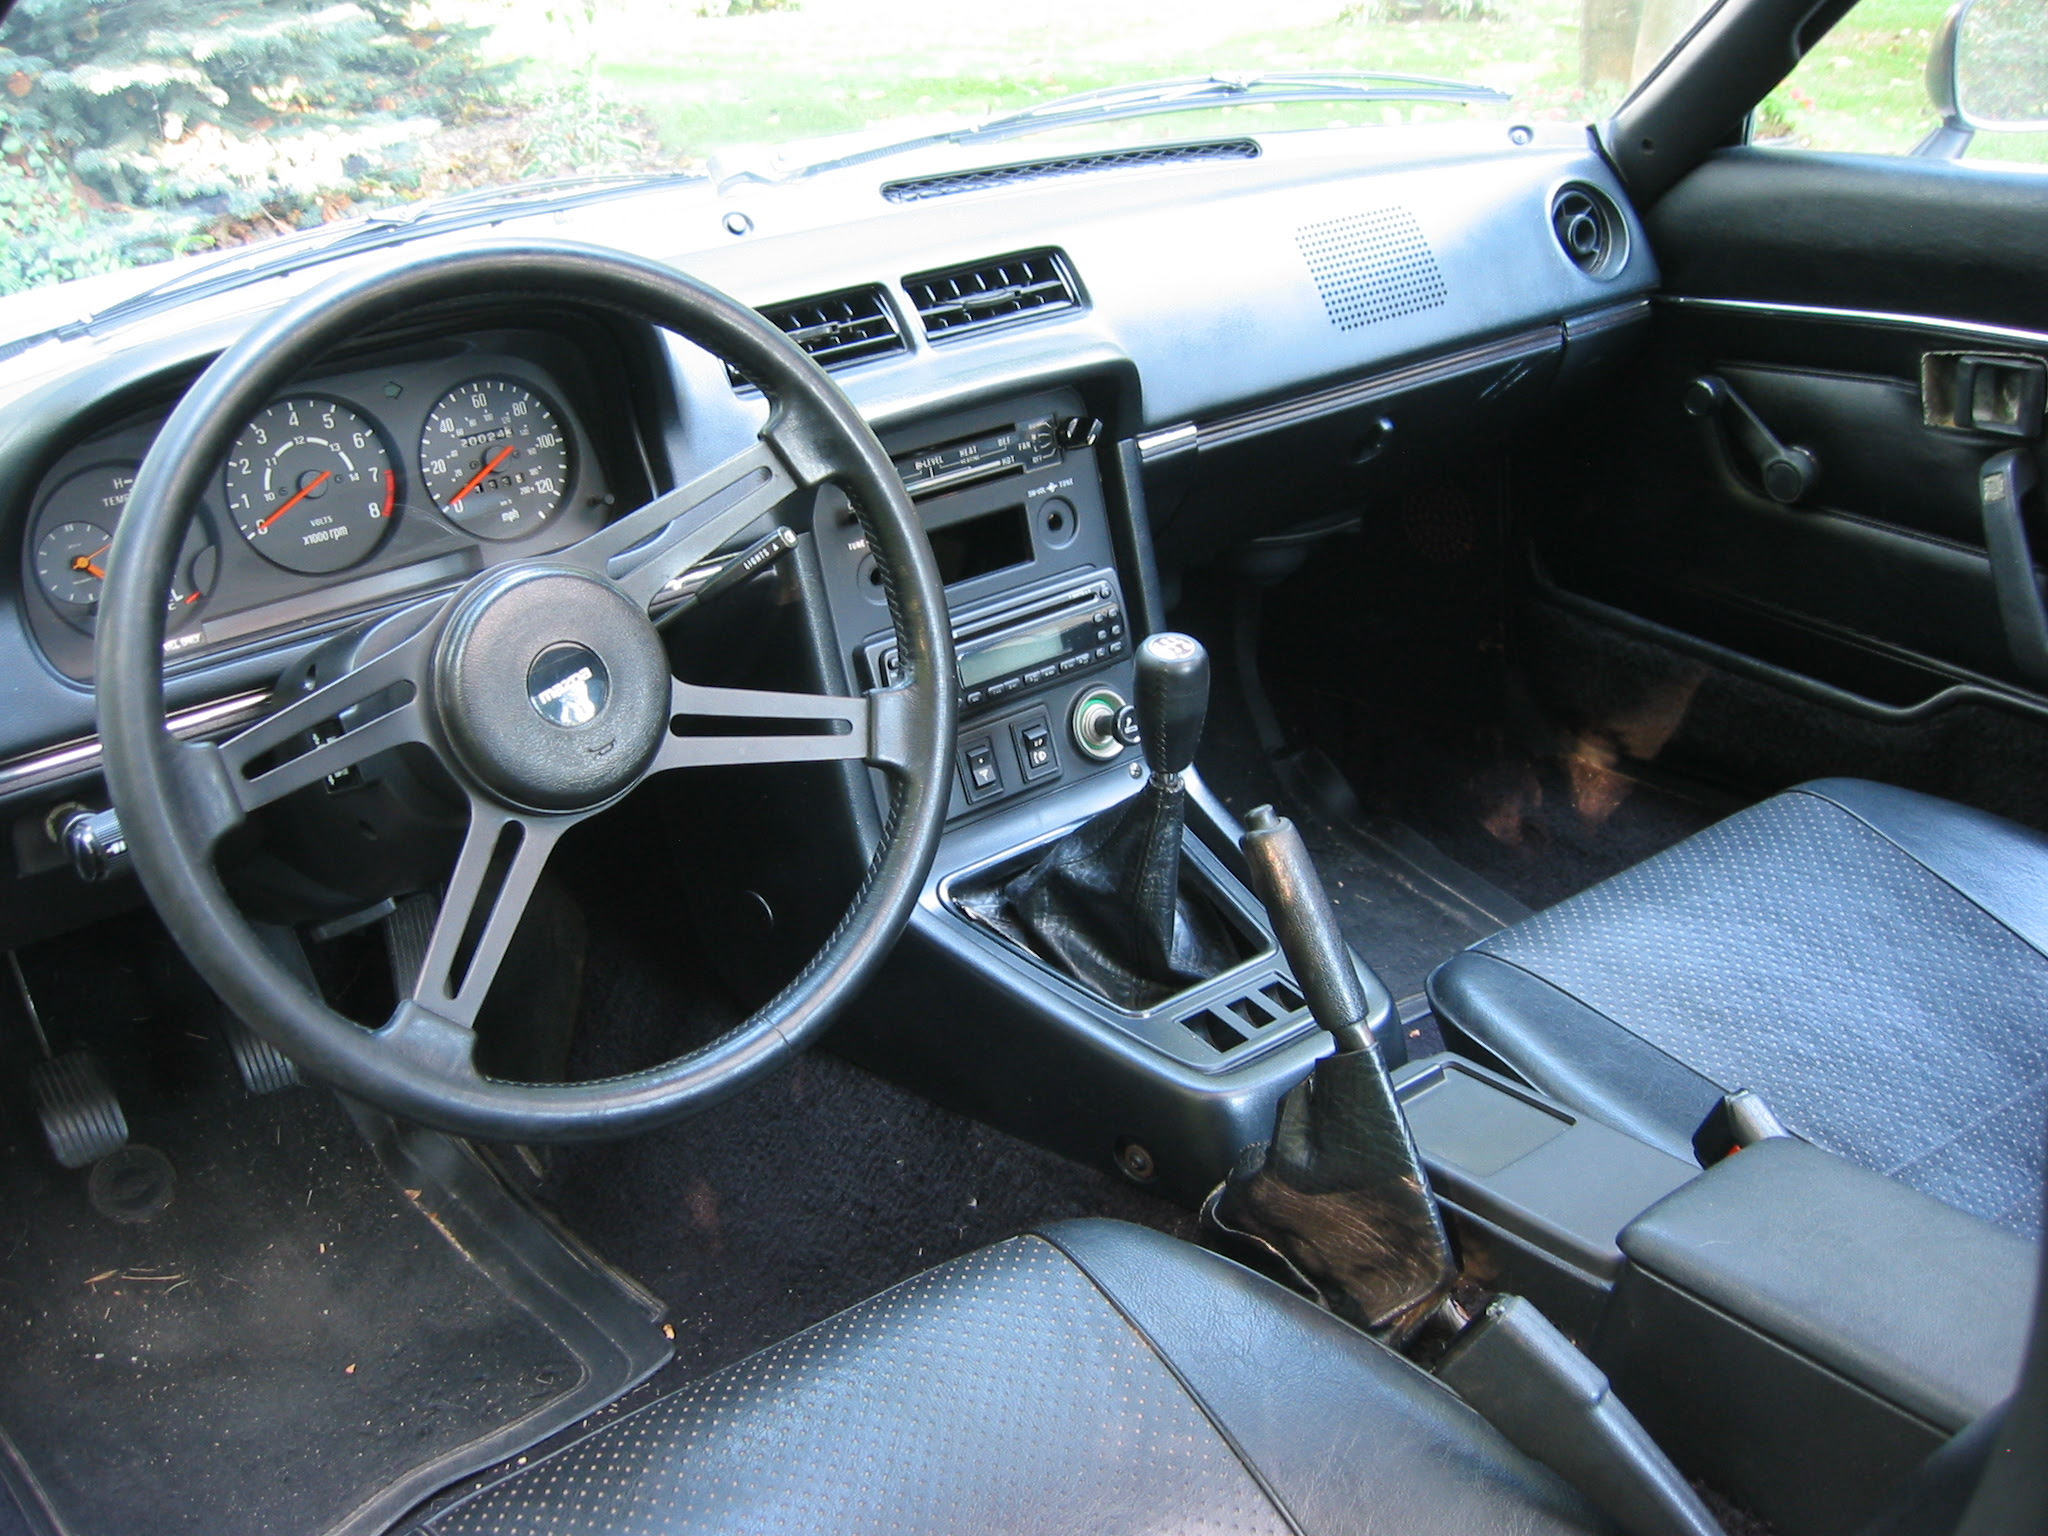 1980 Mazda Rx7 Interior Mazda Cars